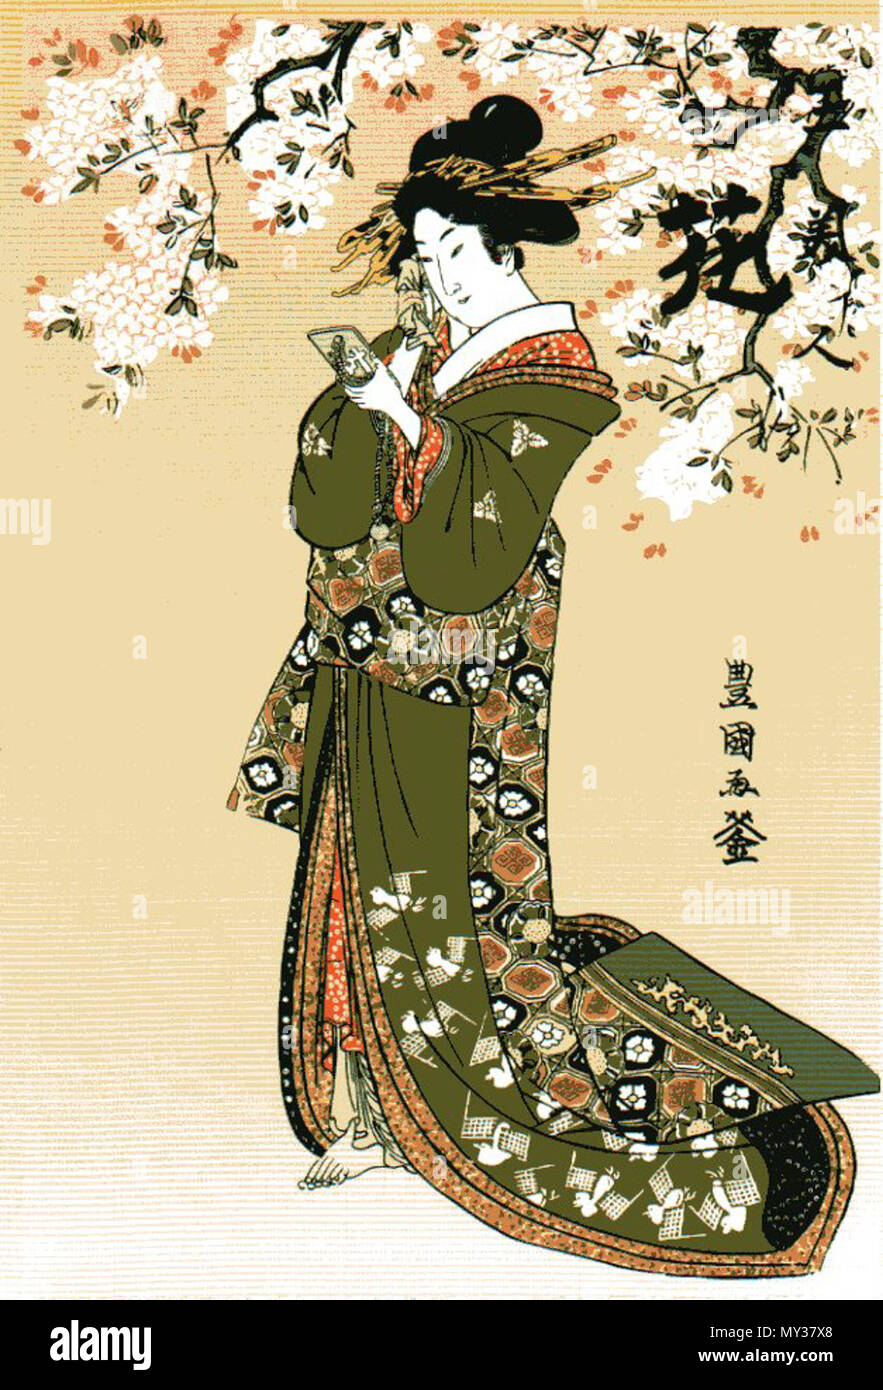 . Englisch: in Computer am 1. Mai 2010 gescannt. späten Japanischen Edo Ära: 1800. 543 Utagawa Toyokuni Utagawa Toyokuni ukiyo-e Holzschnitt Stockfoto